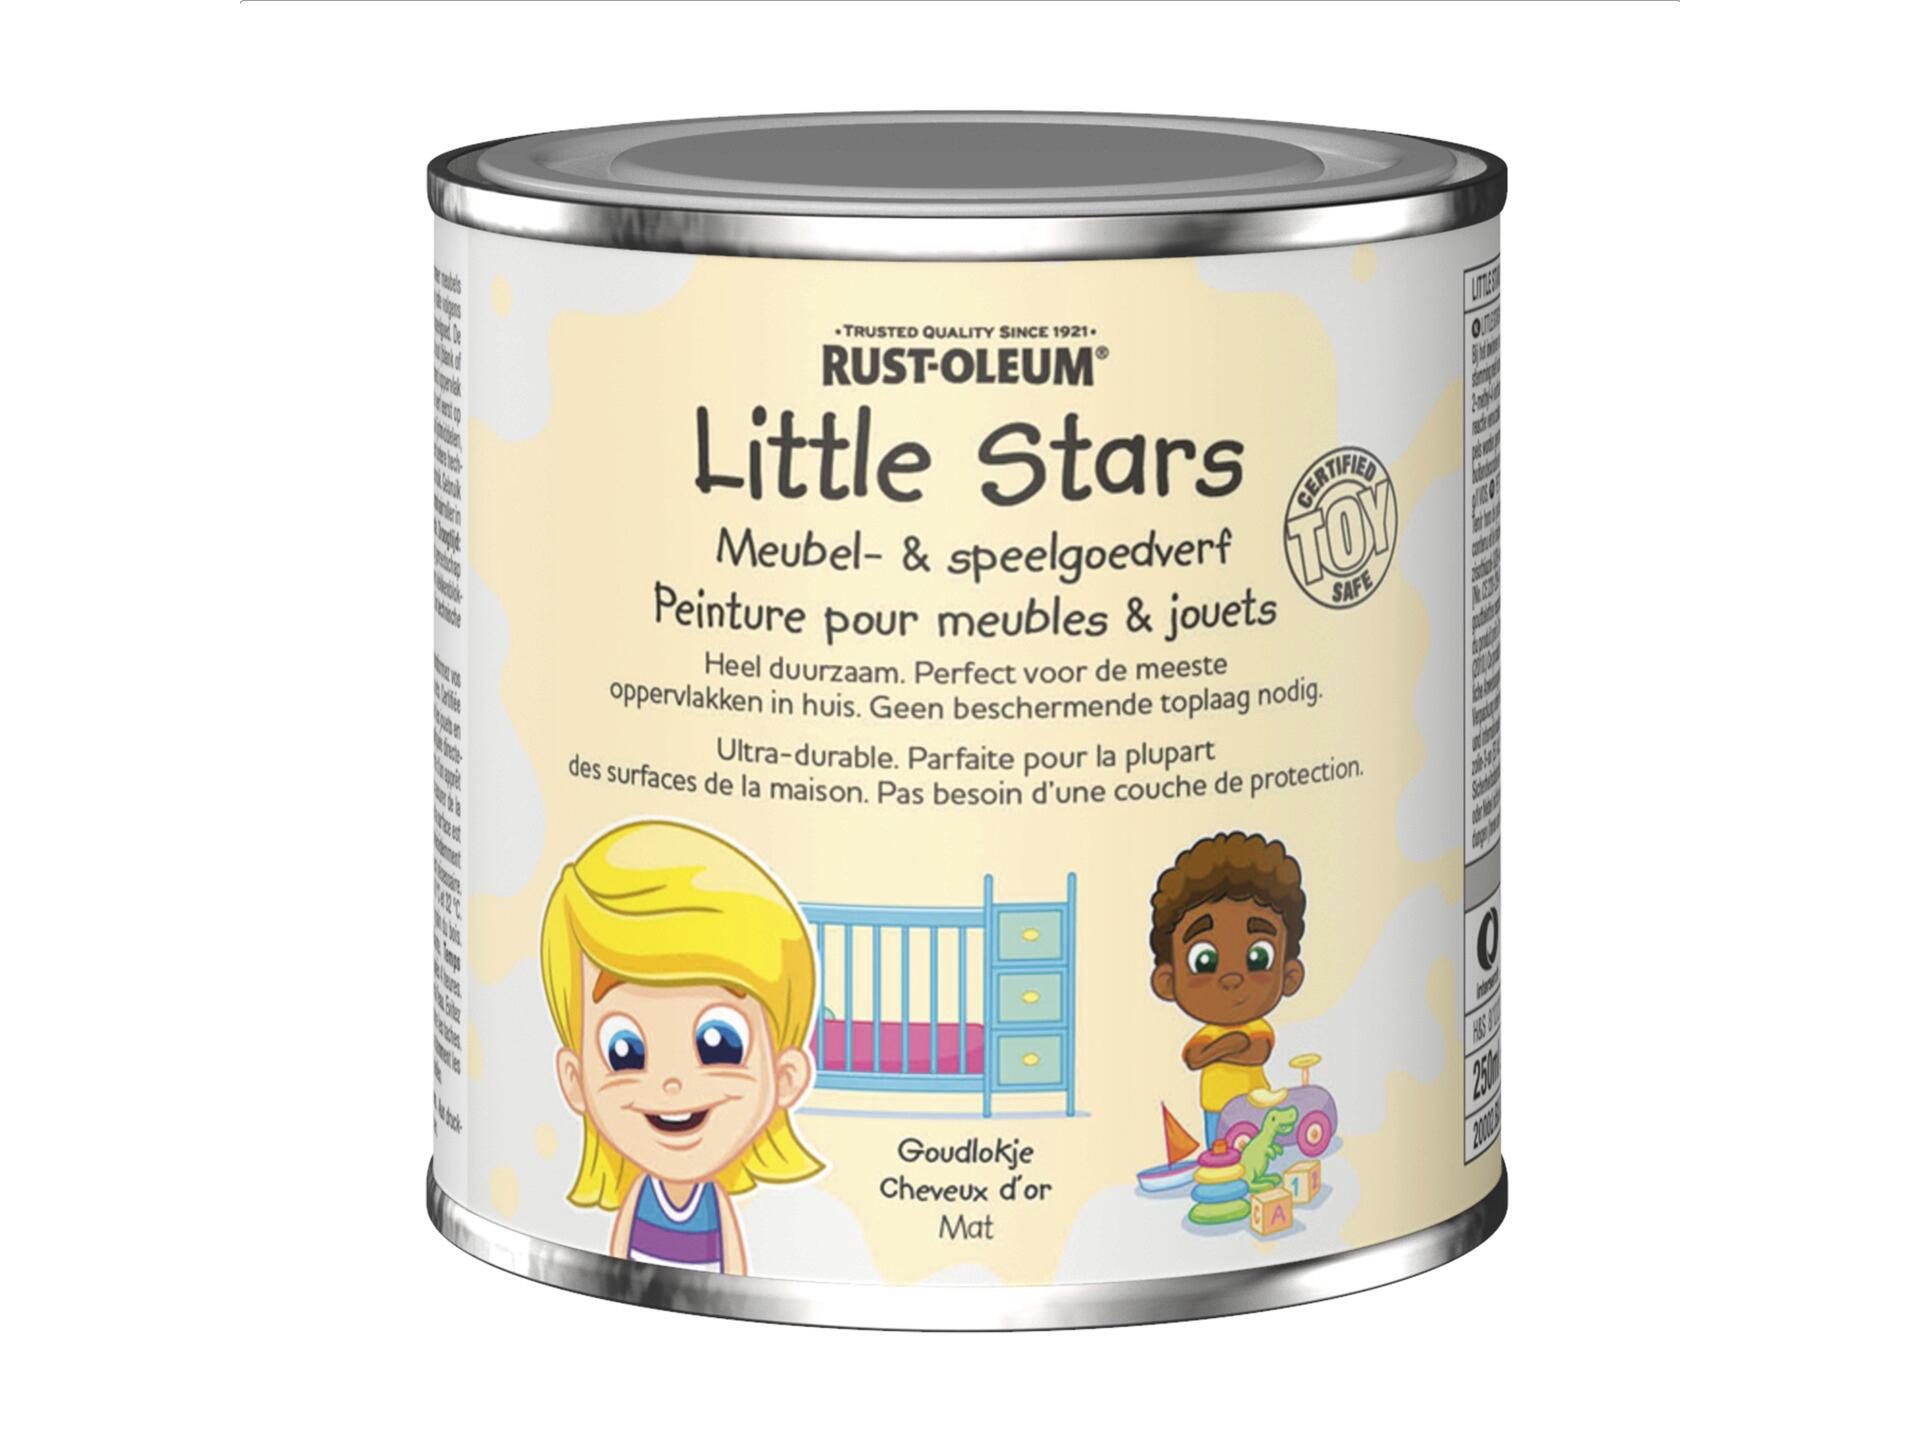 Rust-oleum Little Stars meubel- en speelgoedverf 250ml goudlokje